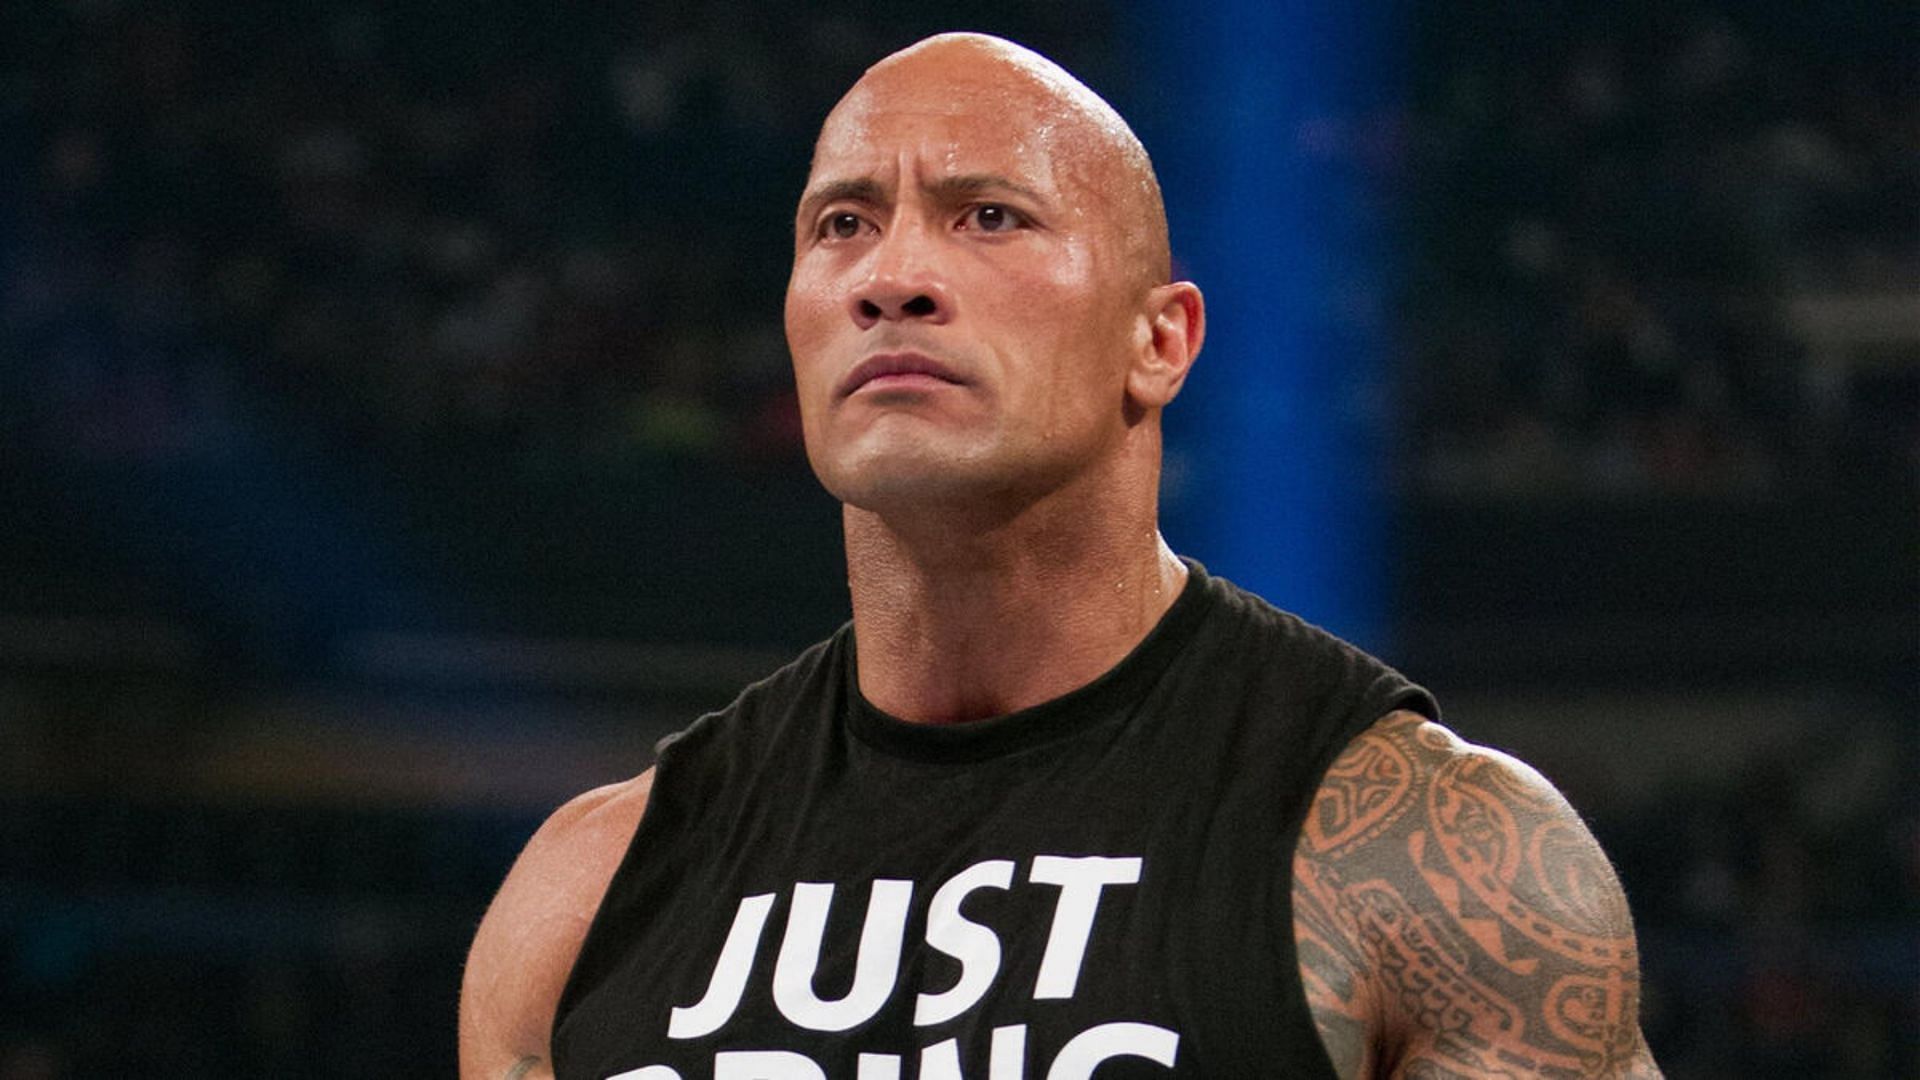 WWE legend The Rock is now a TKO board member